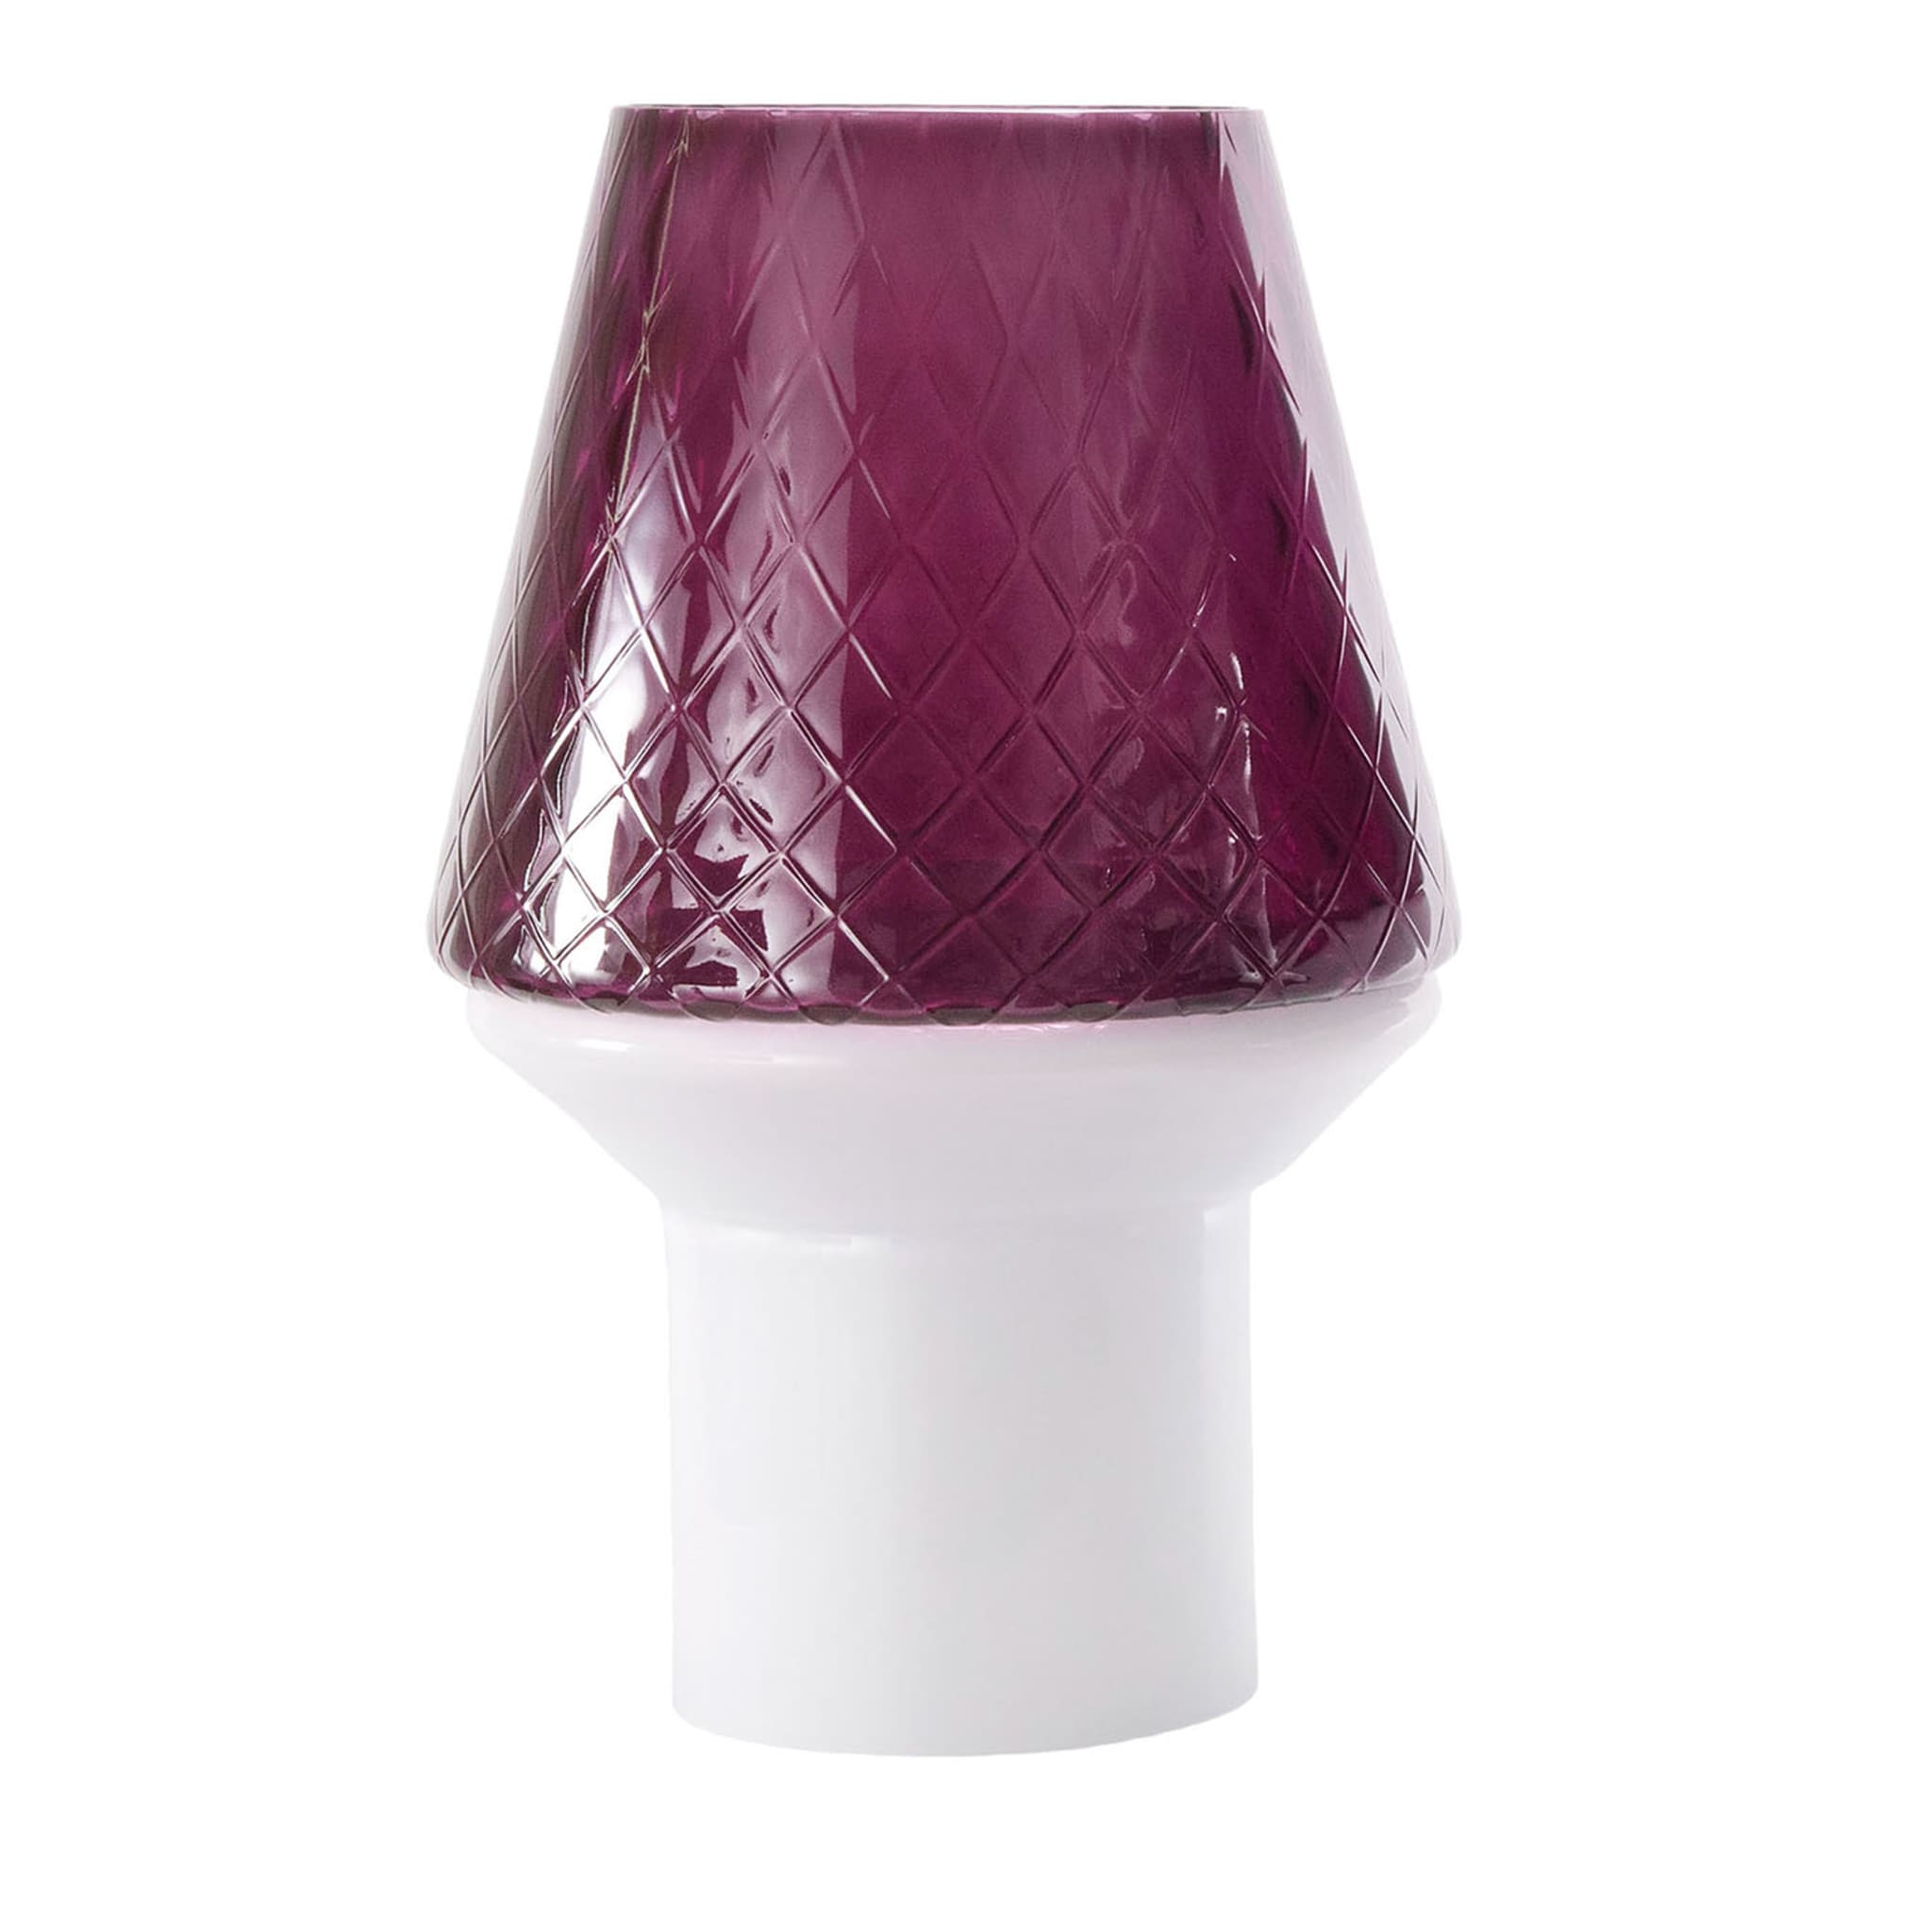 Lámpara de mesa Forest Purple by Romani Saccani #2 - Vista principal